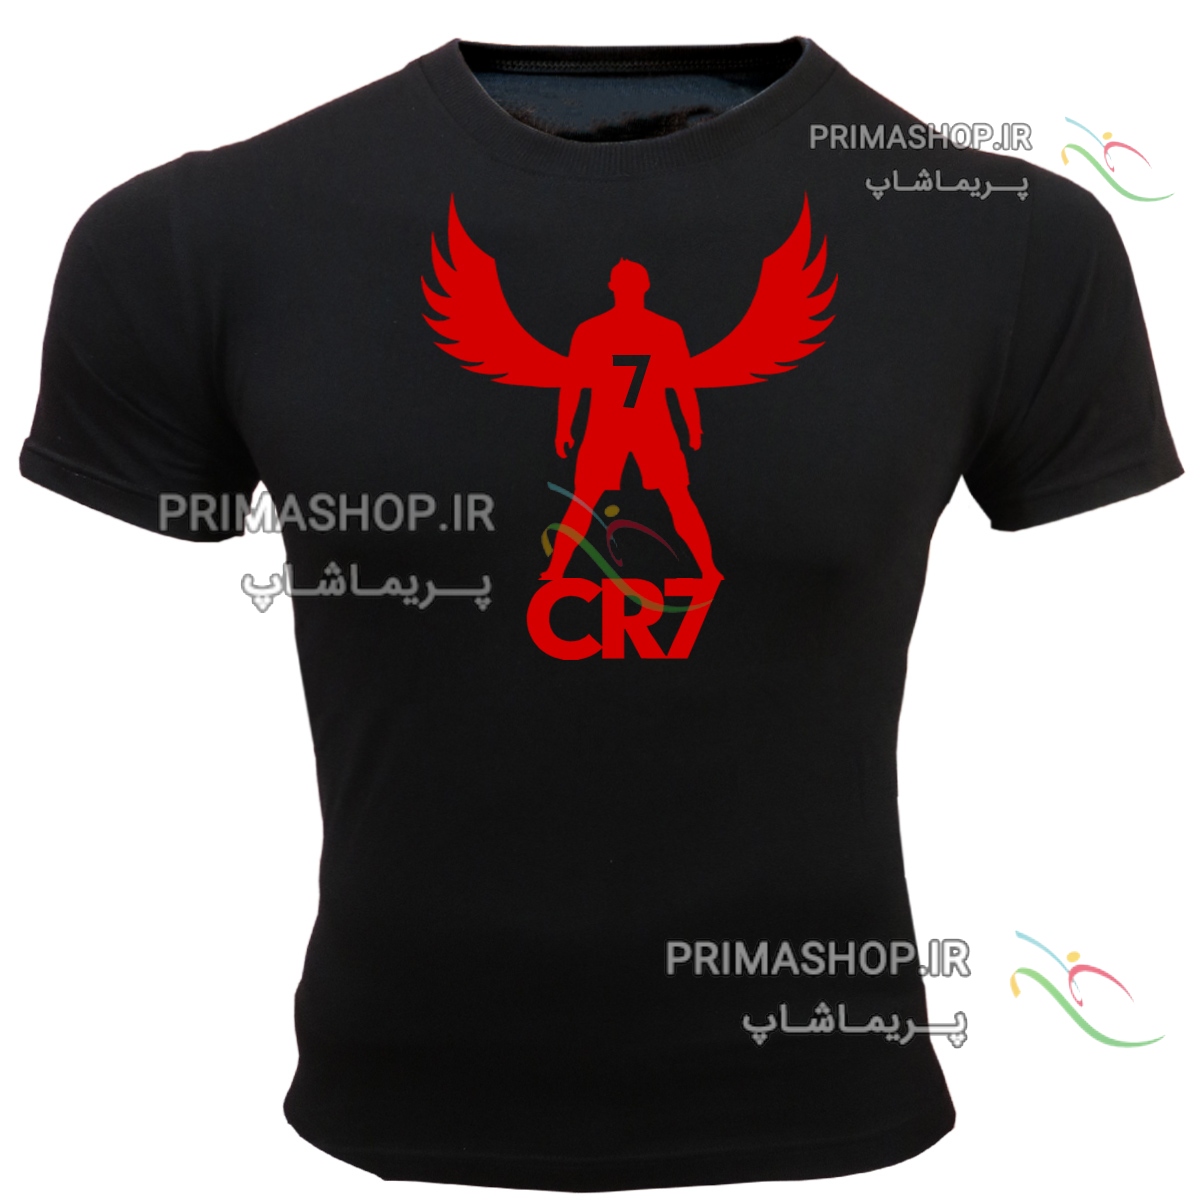 لباس اسپرت ورزشی  رونالدو طرح CR7